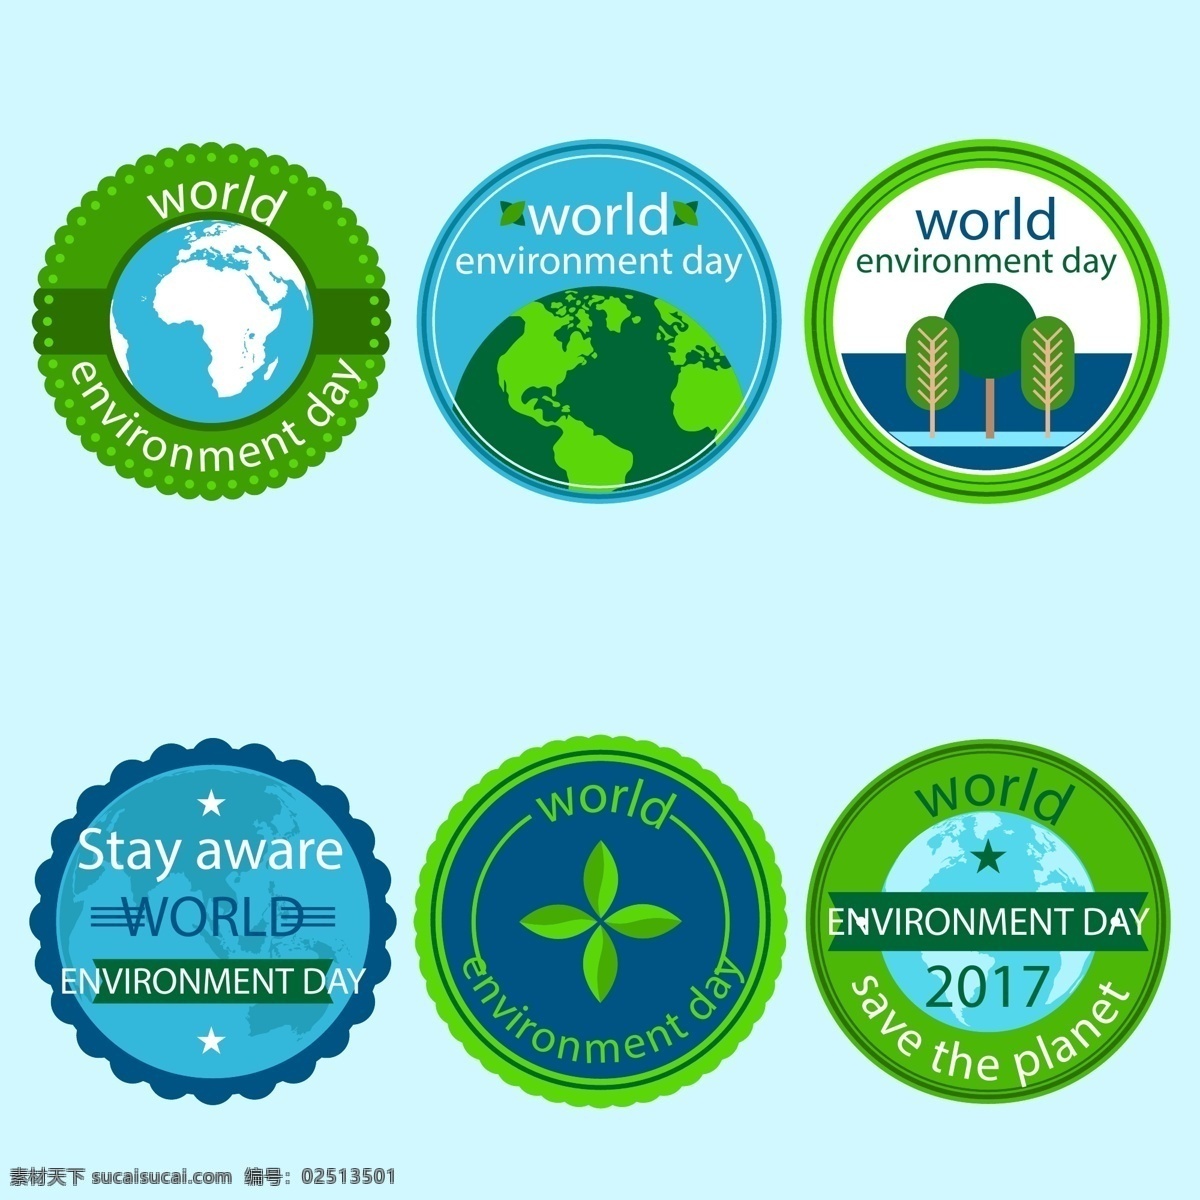 环境日 标识设计 绿色 树叶 地球 标志设计 矢量素材 树 英文 环境 商标